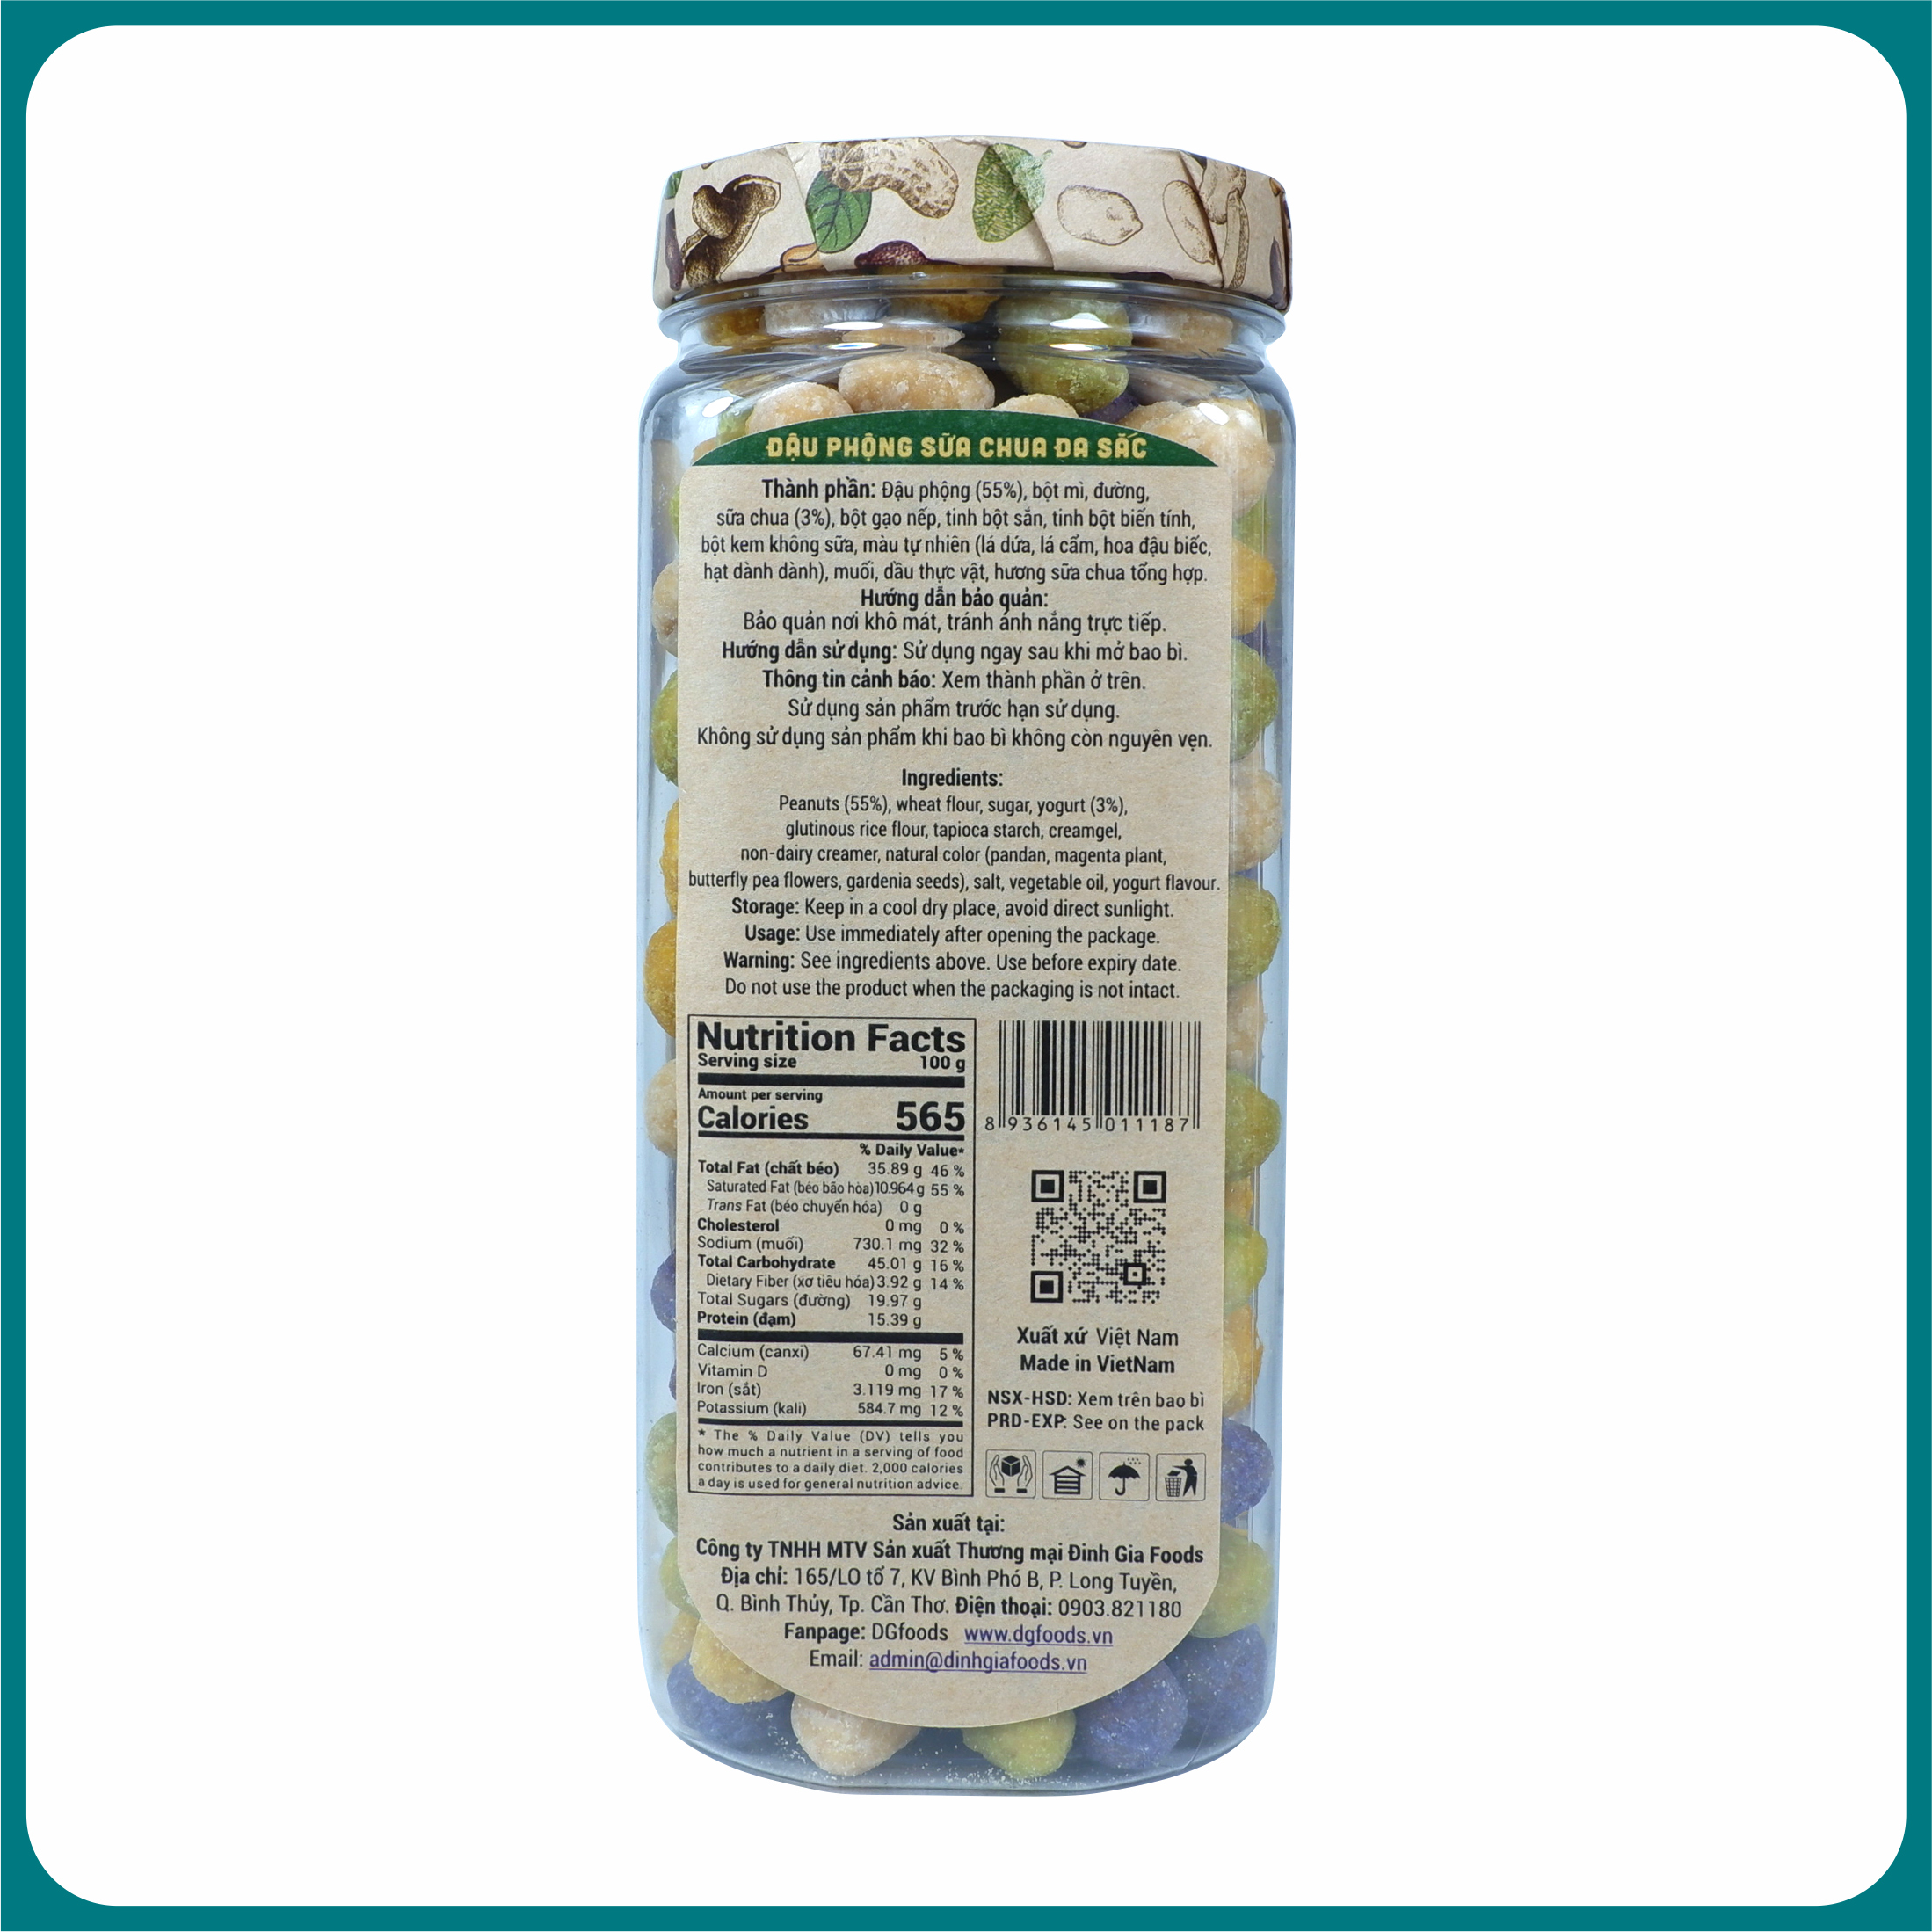 Đậu phộng sữa chua 260g DGfoods/Natural multi-colored yogurt coated peanuts/ăn chay/Đặc sản Cần Thơ,HVNCLC/HACCP/HALAL